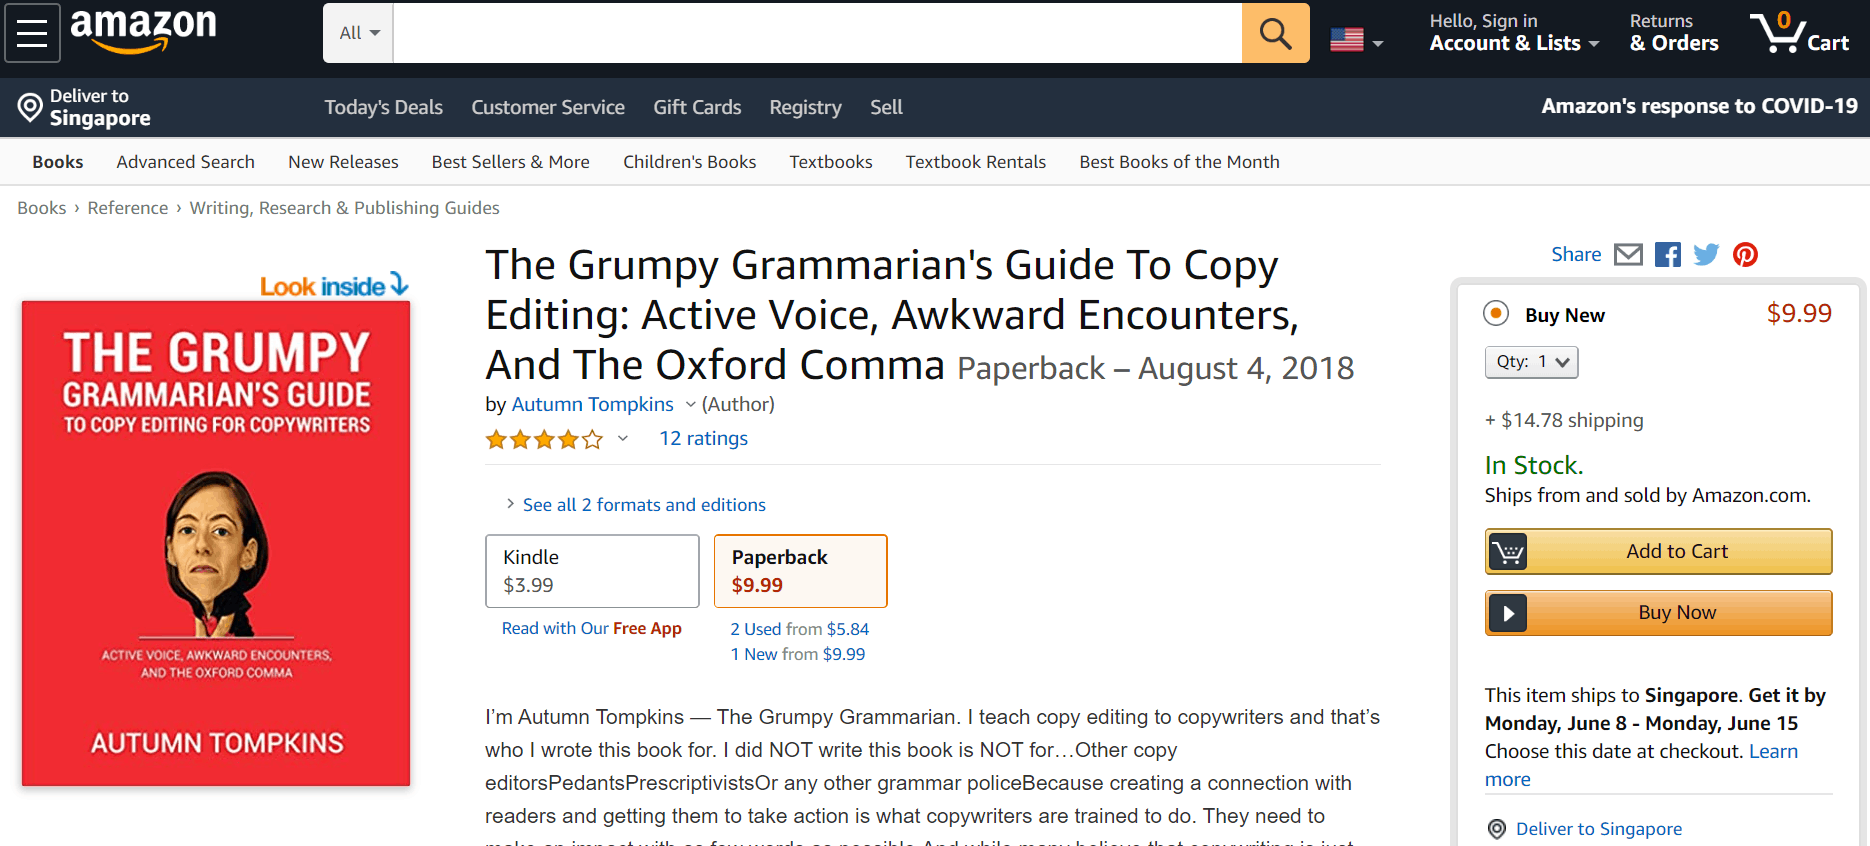 Website ideas - The Grumpy Grammarian's book sell on Amazon 